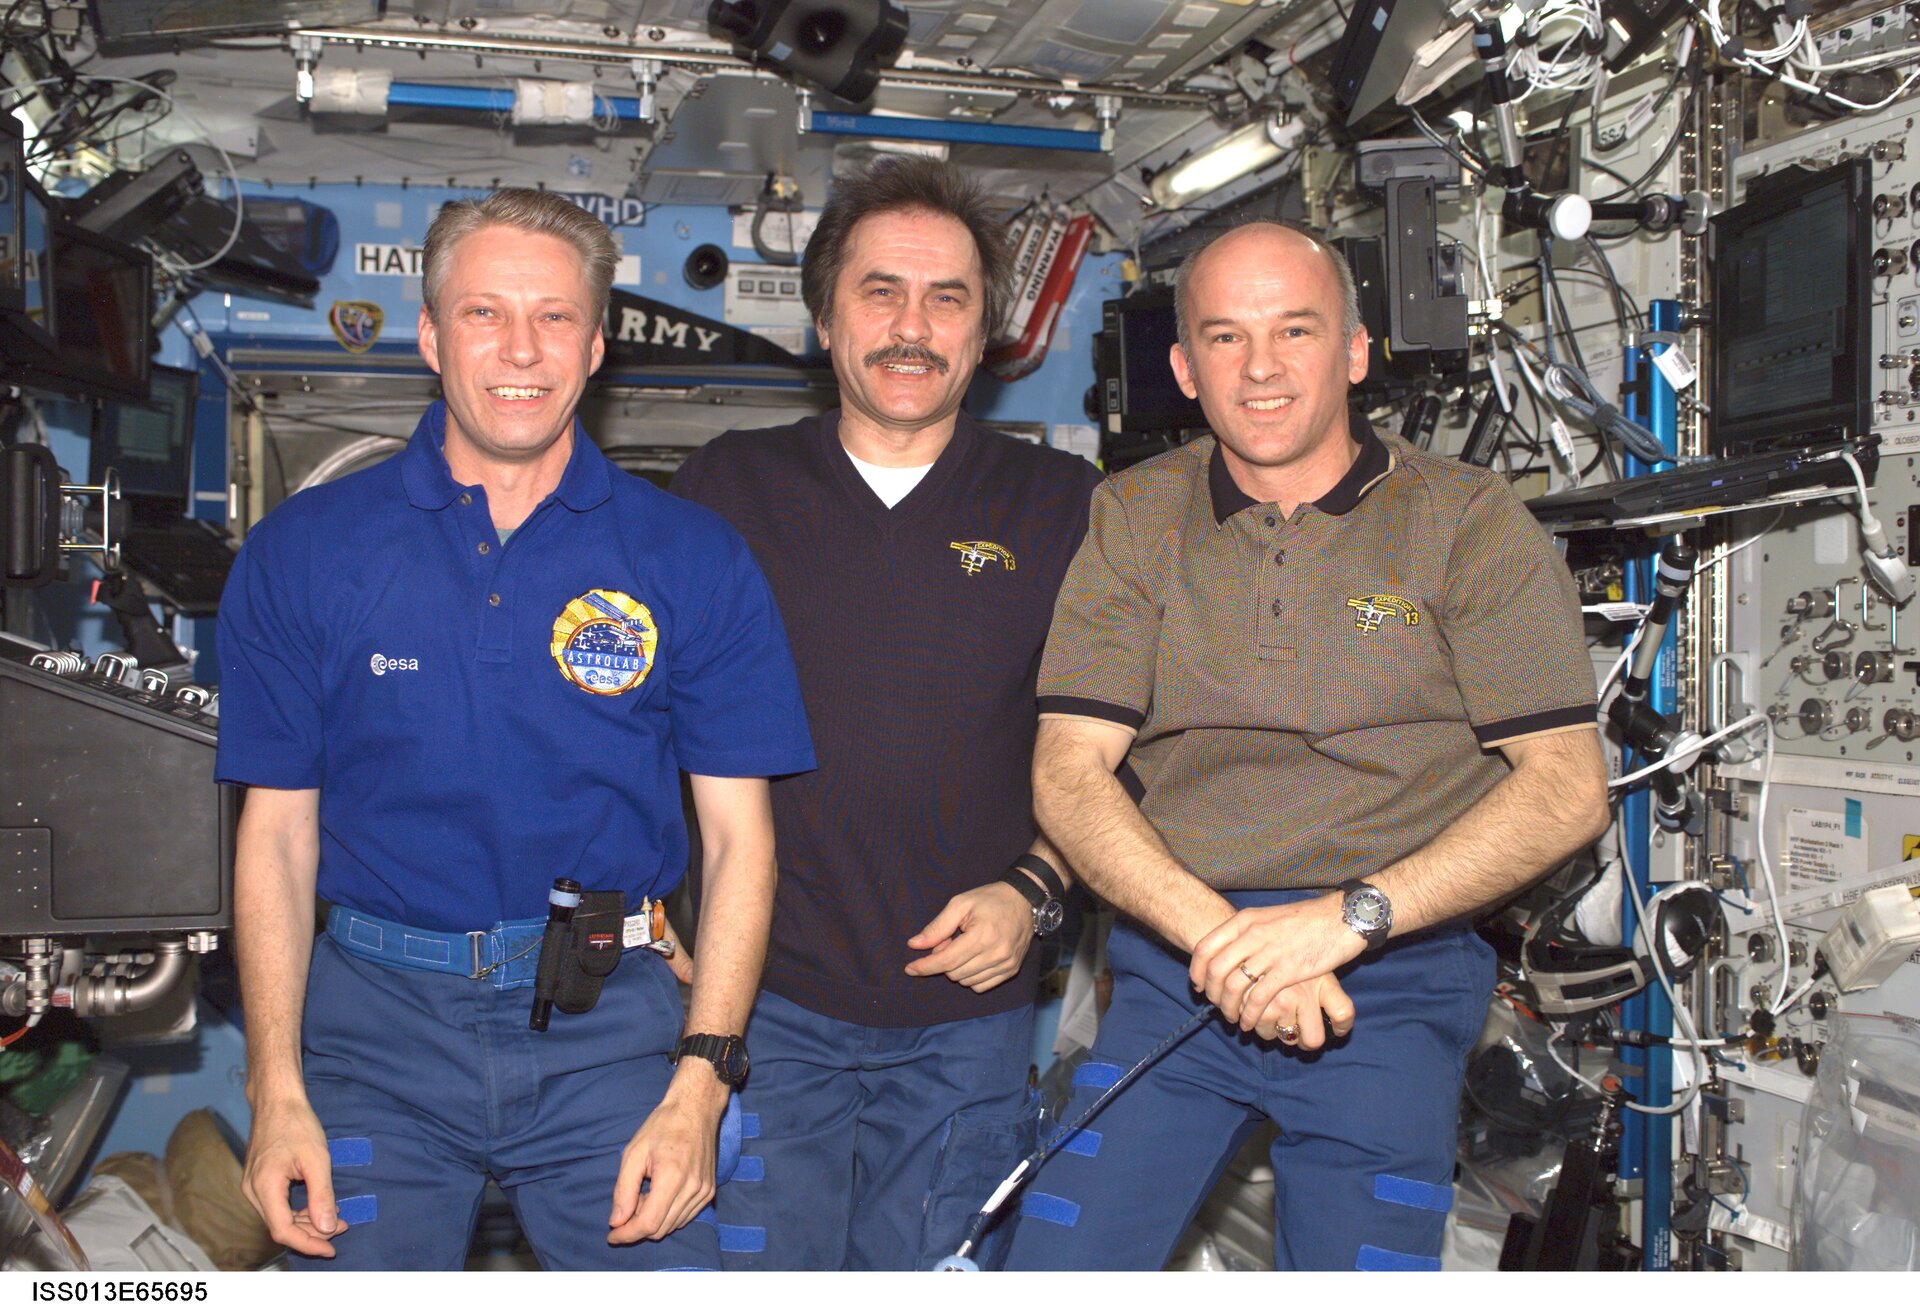 Expedition 13 crew: Thomas Reiter, Pavel Vinogradov and Jeff Williams